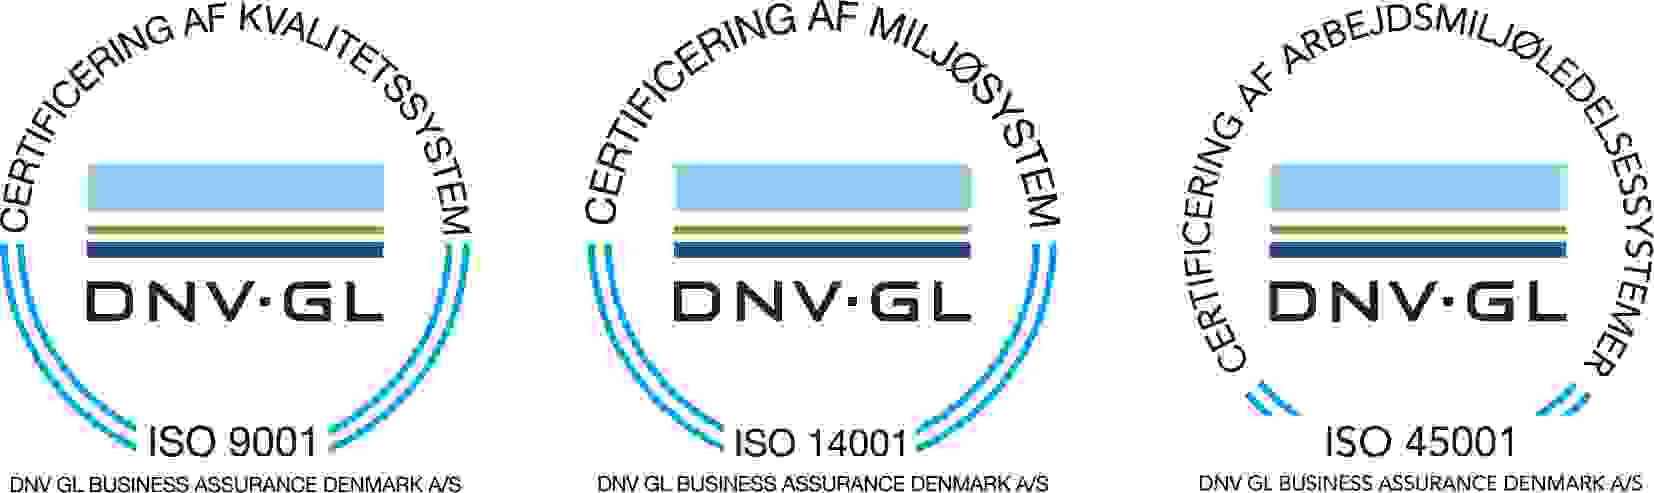 DK ISO9001 ISO14001 ISO45001 Aligned COL Outline